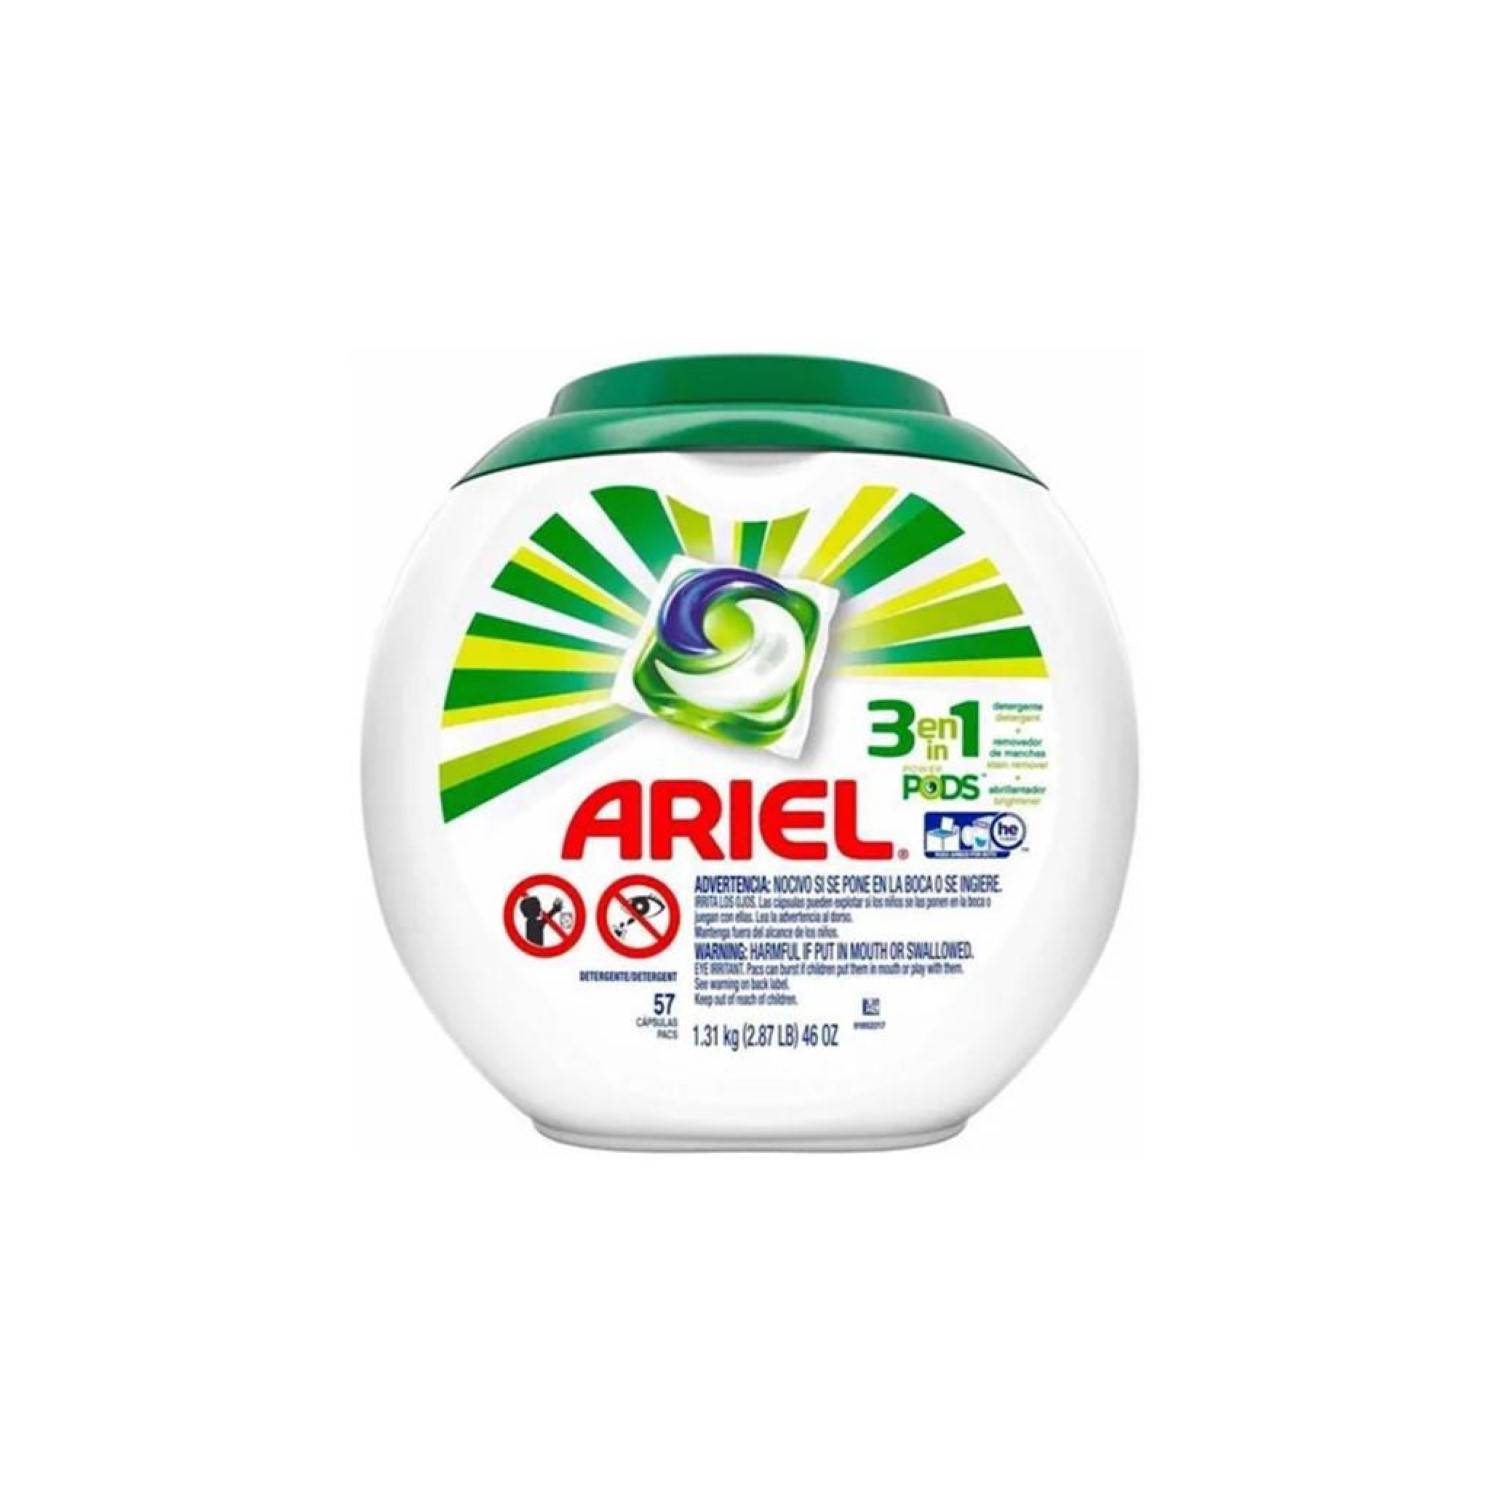 ARIEL Detergente En Capsulas 3 En 1 Con Envase 57 Pods Ariel